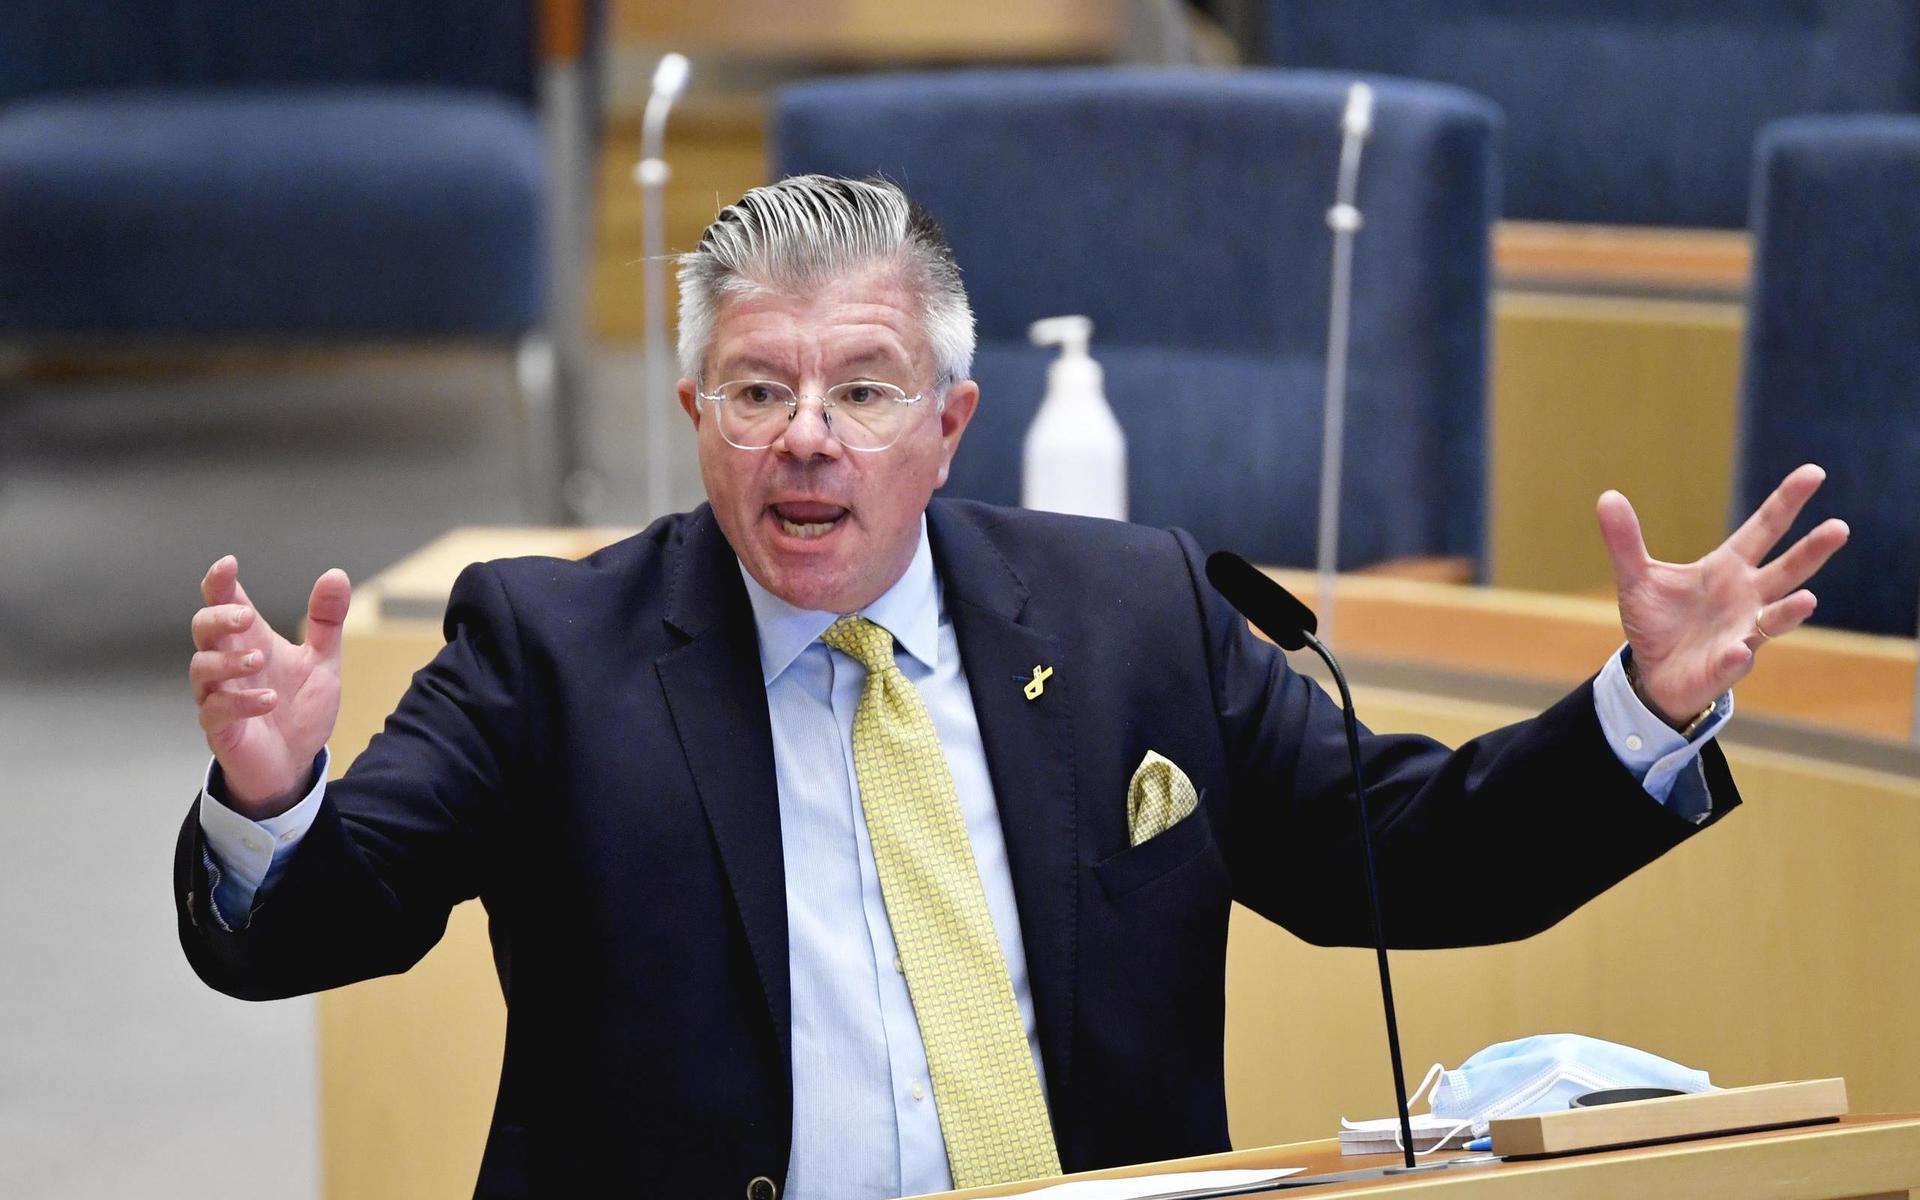 STOCKHOLM 20210224Riksdagsledamoten Hans Wallmark (M) under den utrikespolitiska debatten i riksdagen.Foto: Henrik Montgomery / TT kod 10060